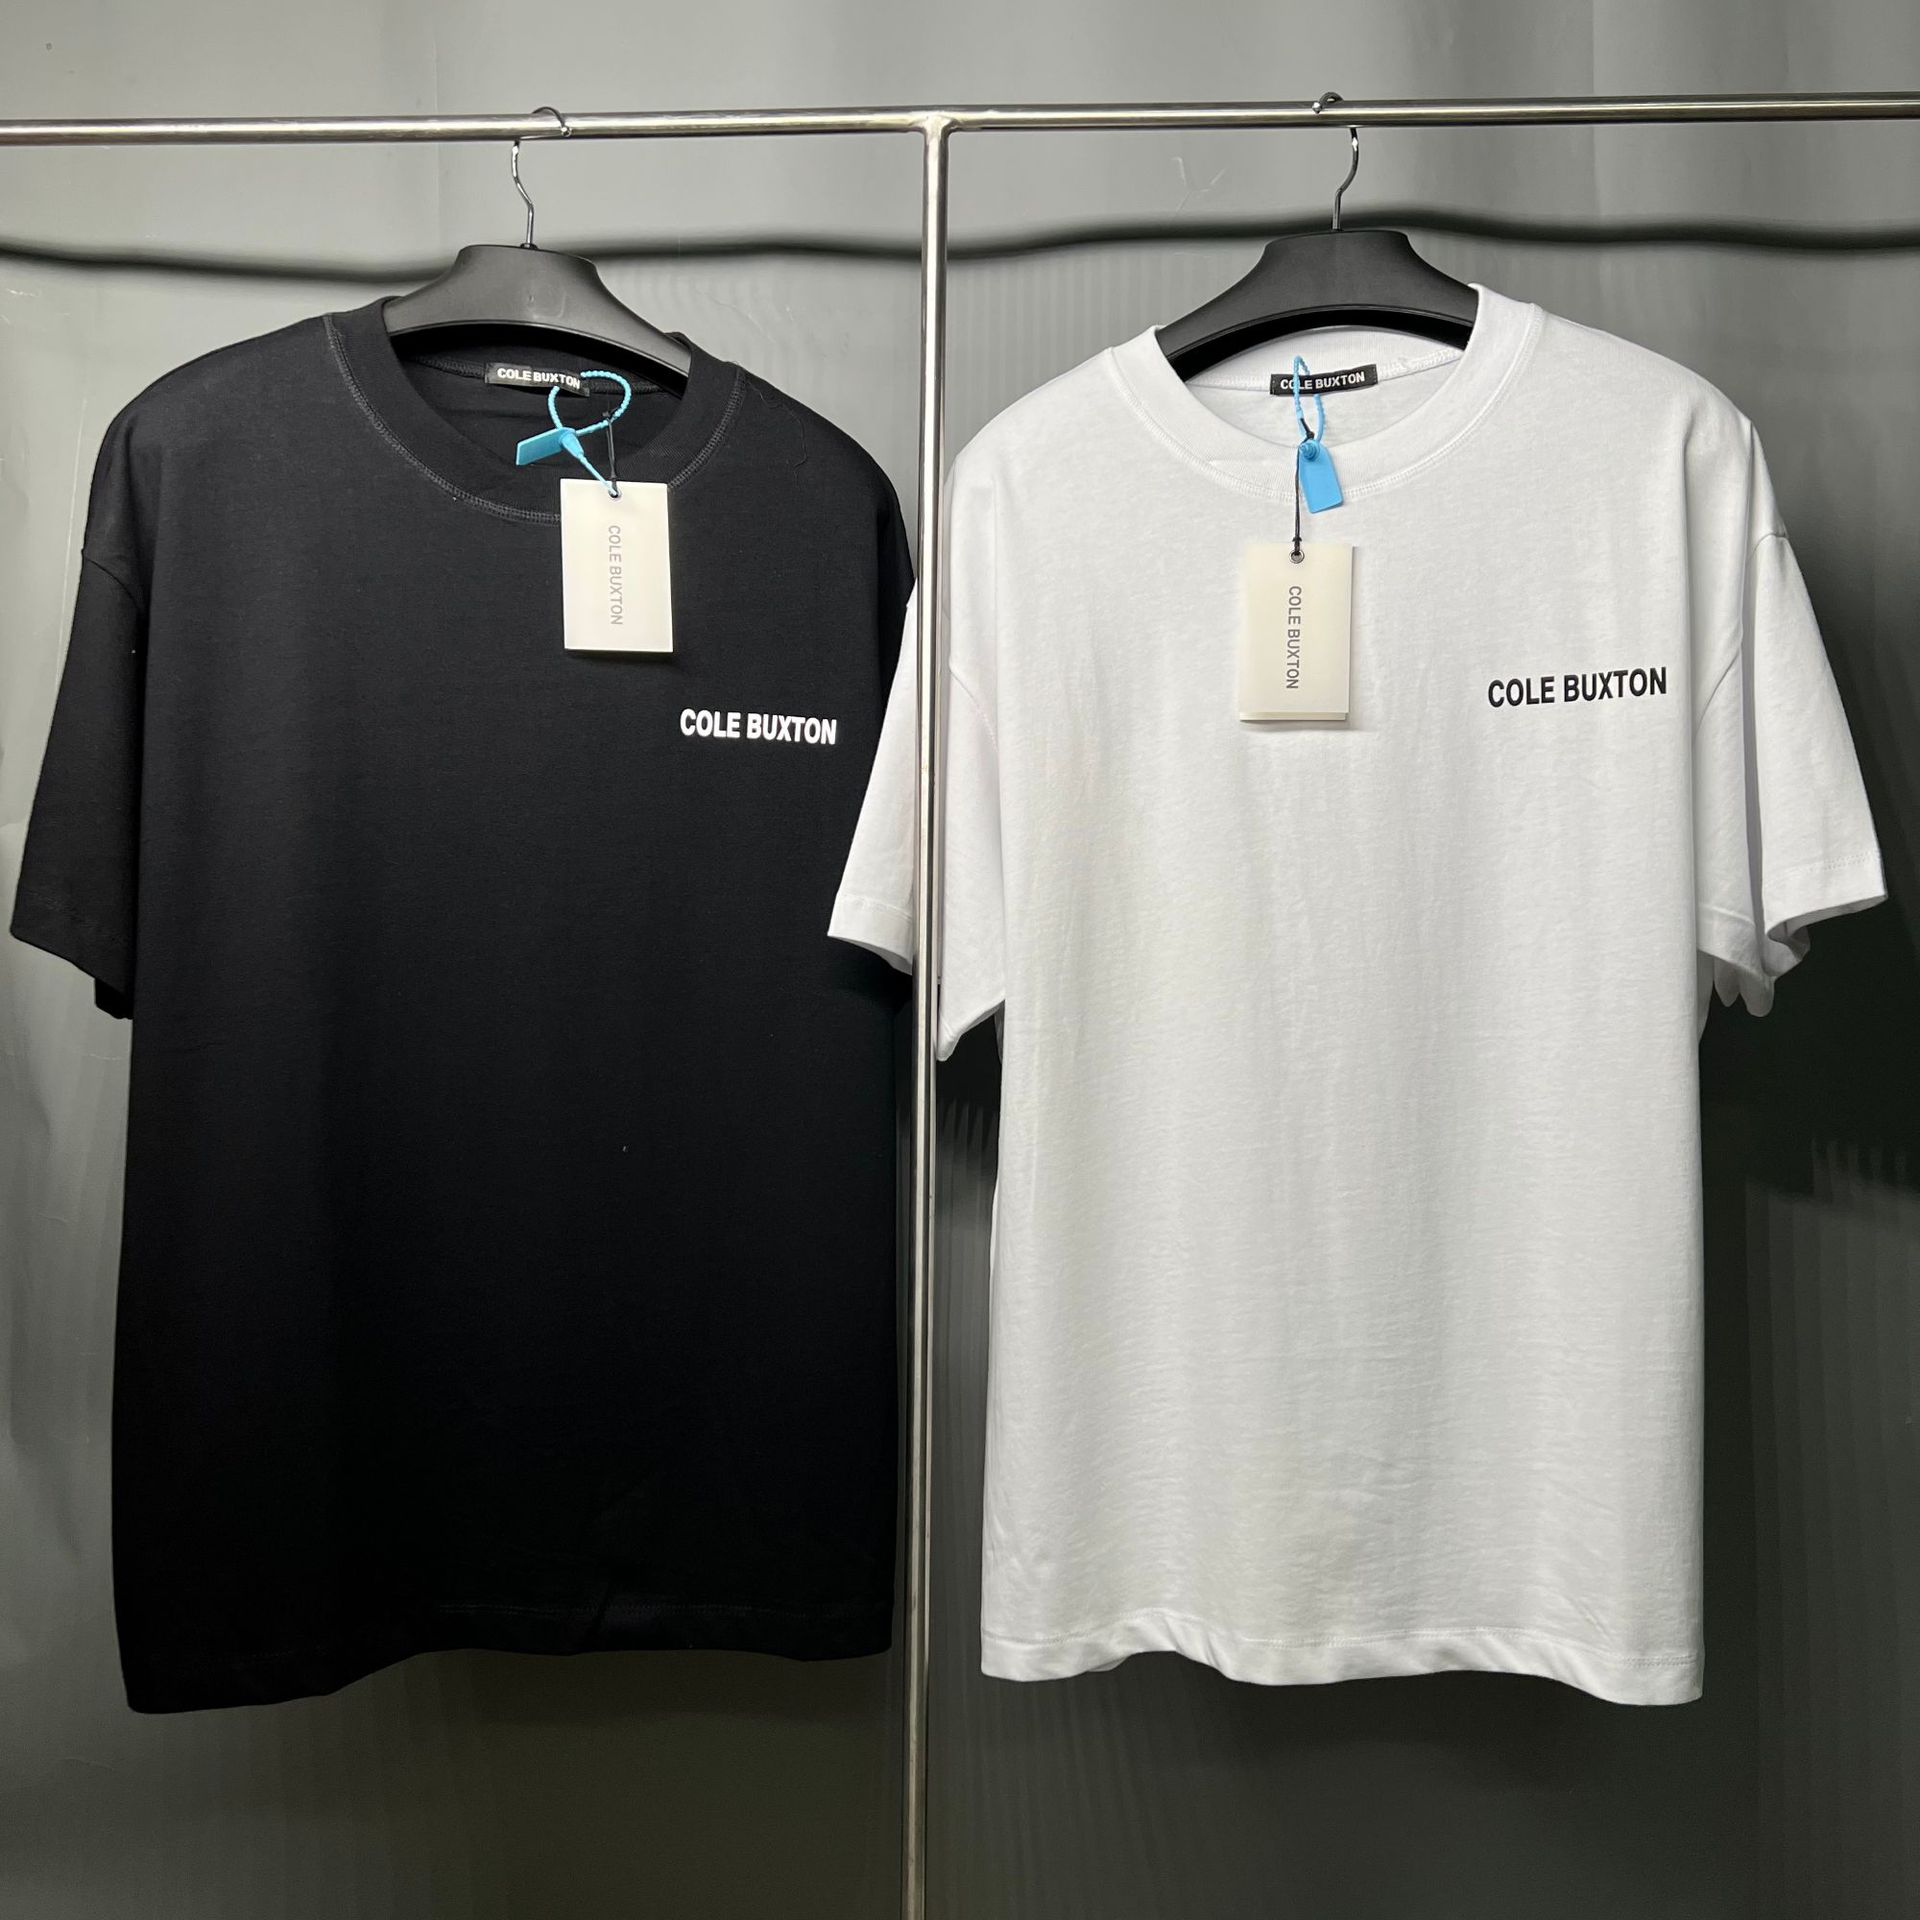 Erkek Tişörtler Yüksek Sokak Küçük Popüler Minimal Tasarım Baskı Slogan Mektubu Baskı Kısa Kollu Çift T-Shirt% 100 Pamuk Black Beyaz T